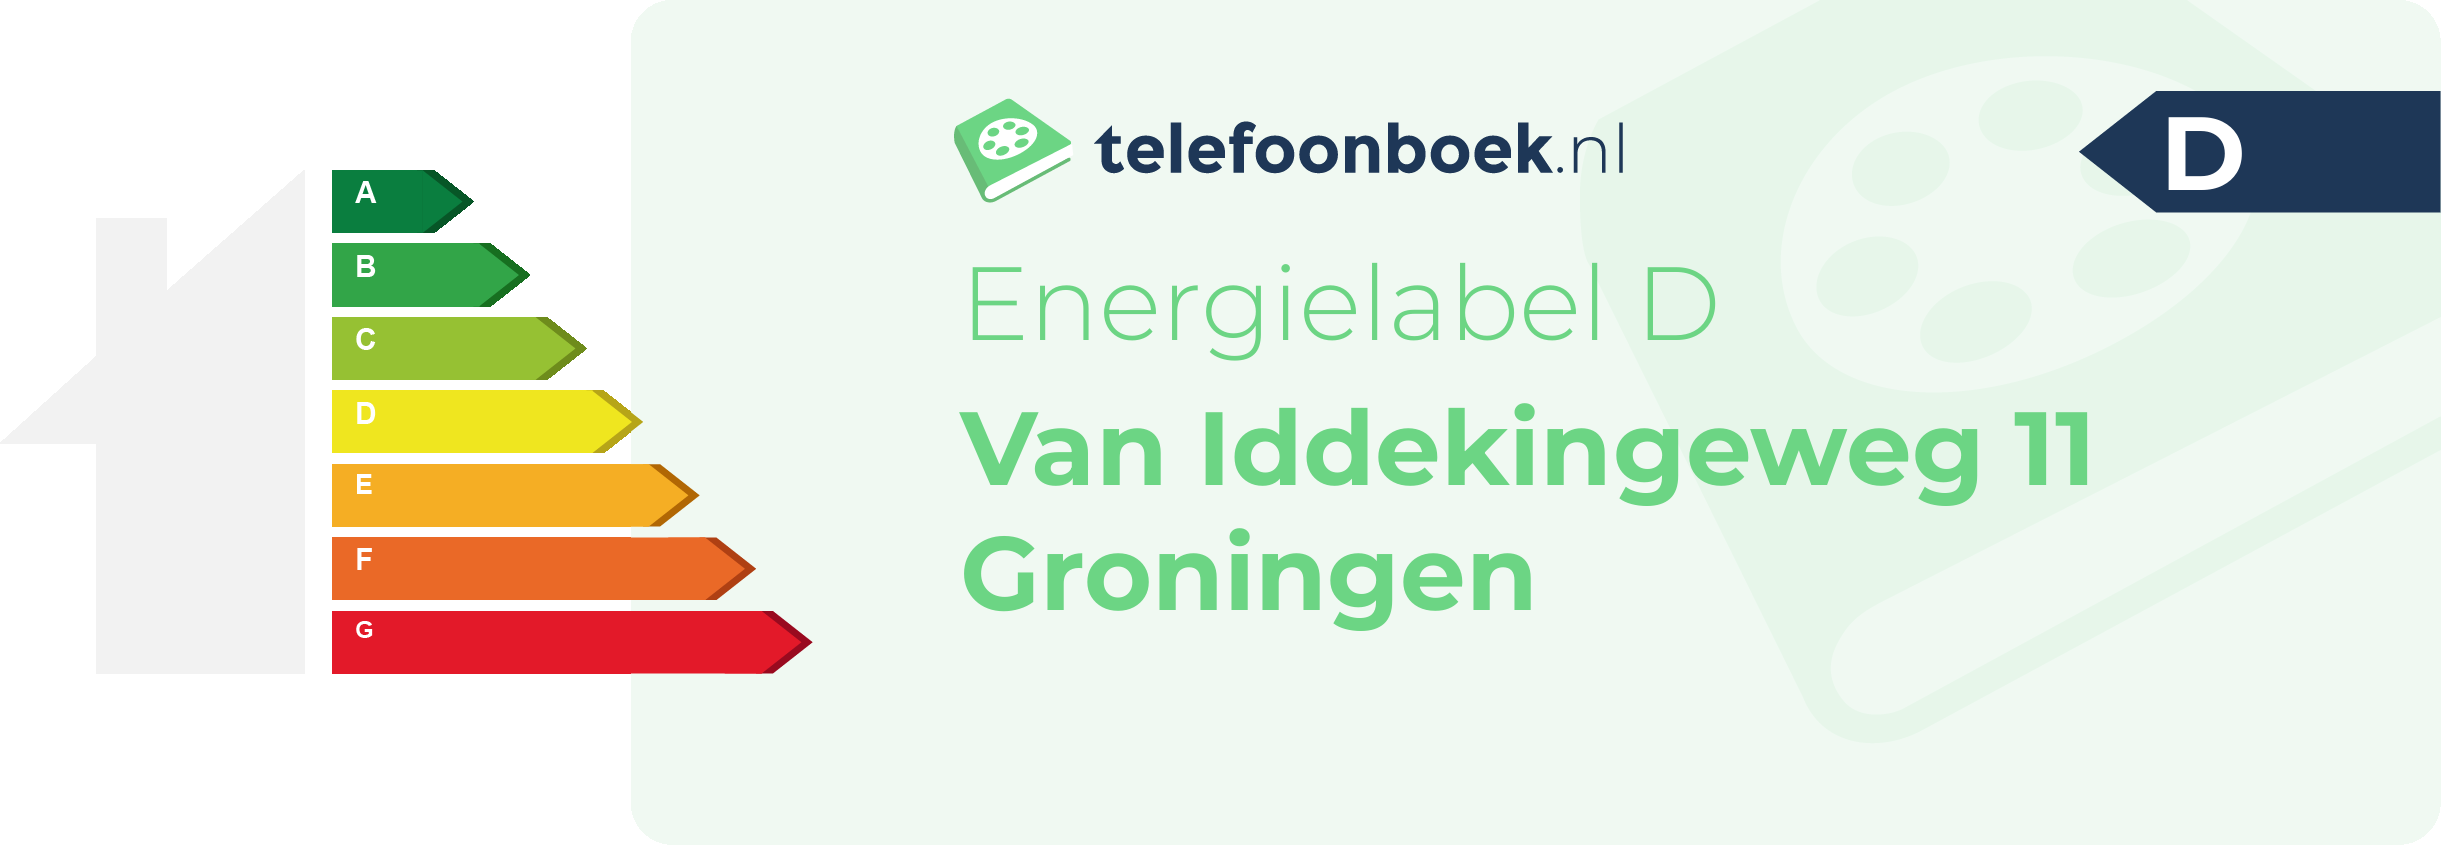 Energielabel Van Iddekingeweg 11 Groningen